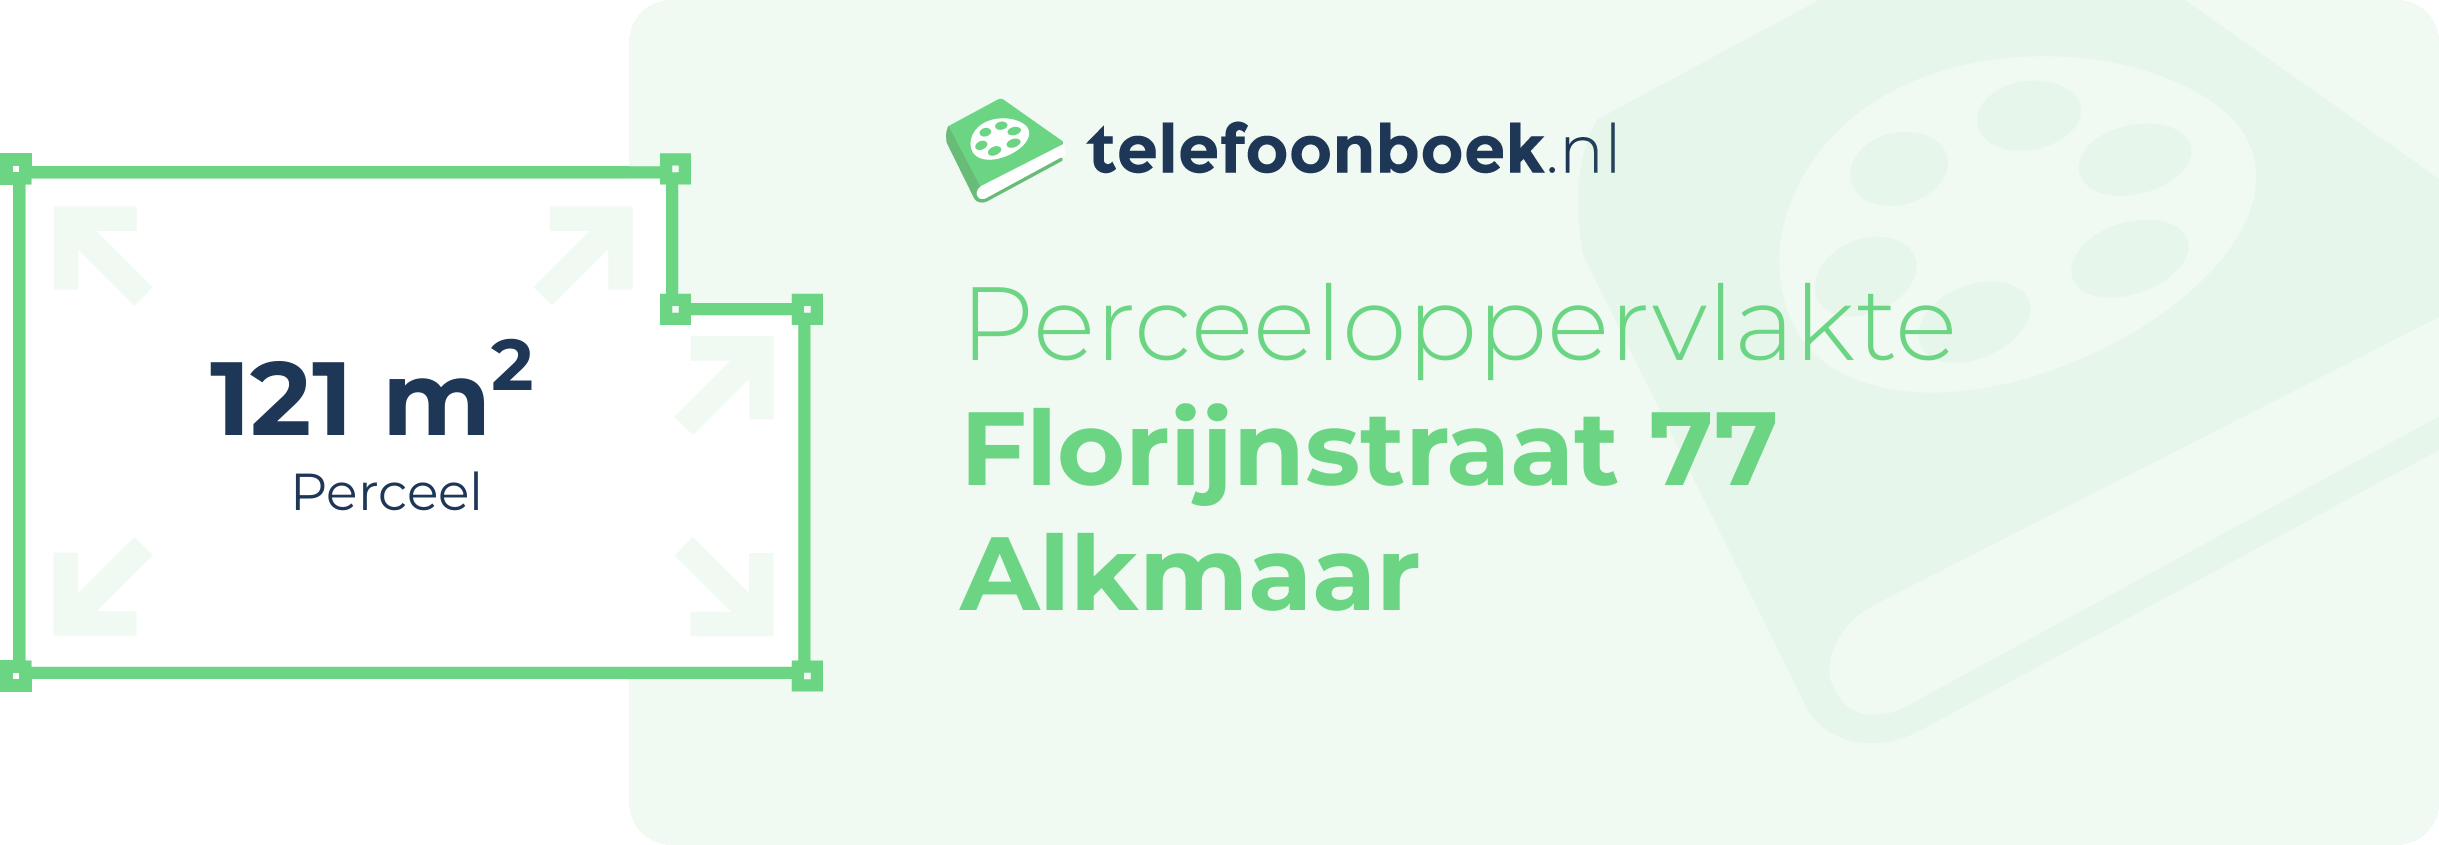 Perceeloppervlakte Florijnstraat 77 Alkmaar